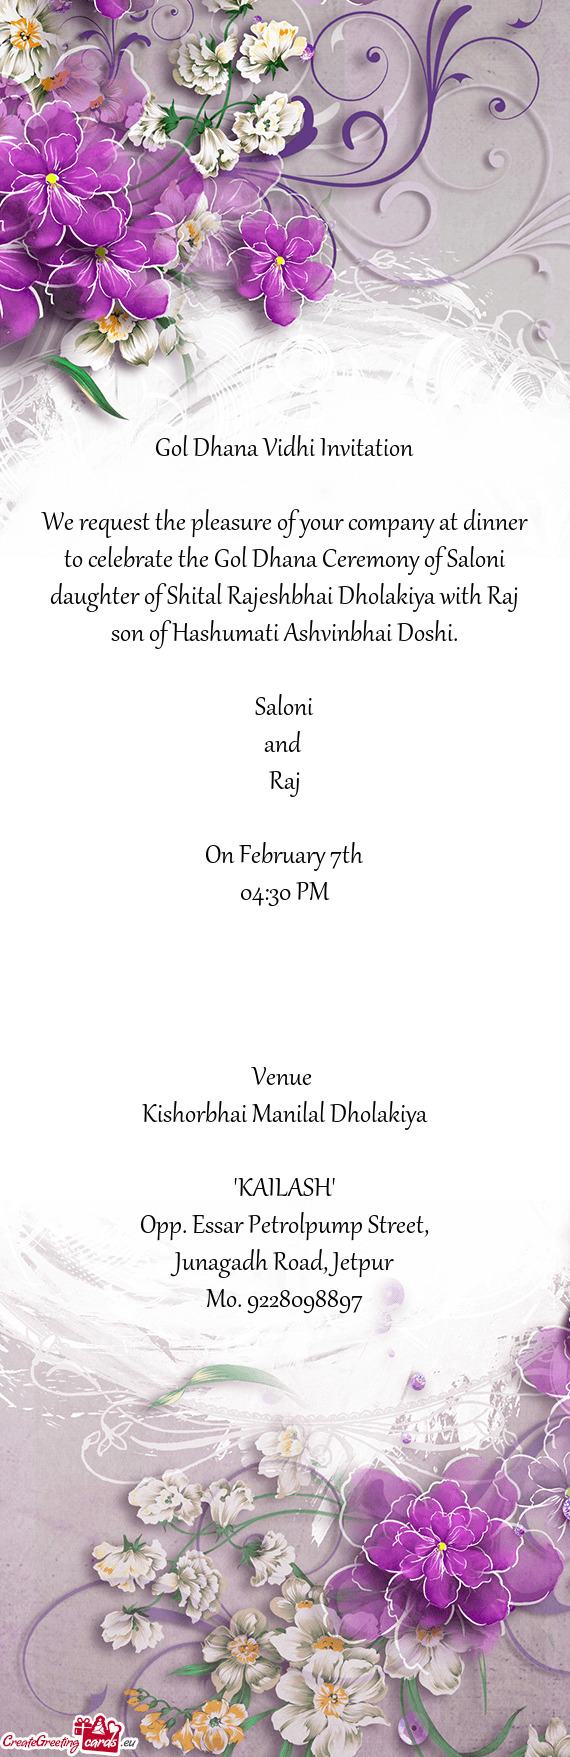 Hter of Shital Rajeshbhai Dholakiya with Raj son of Hashumati Ashvinbhai Doshi